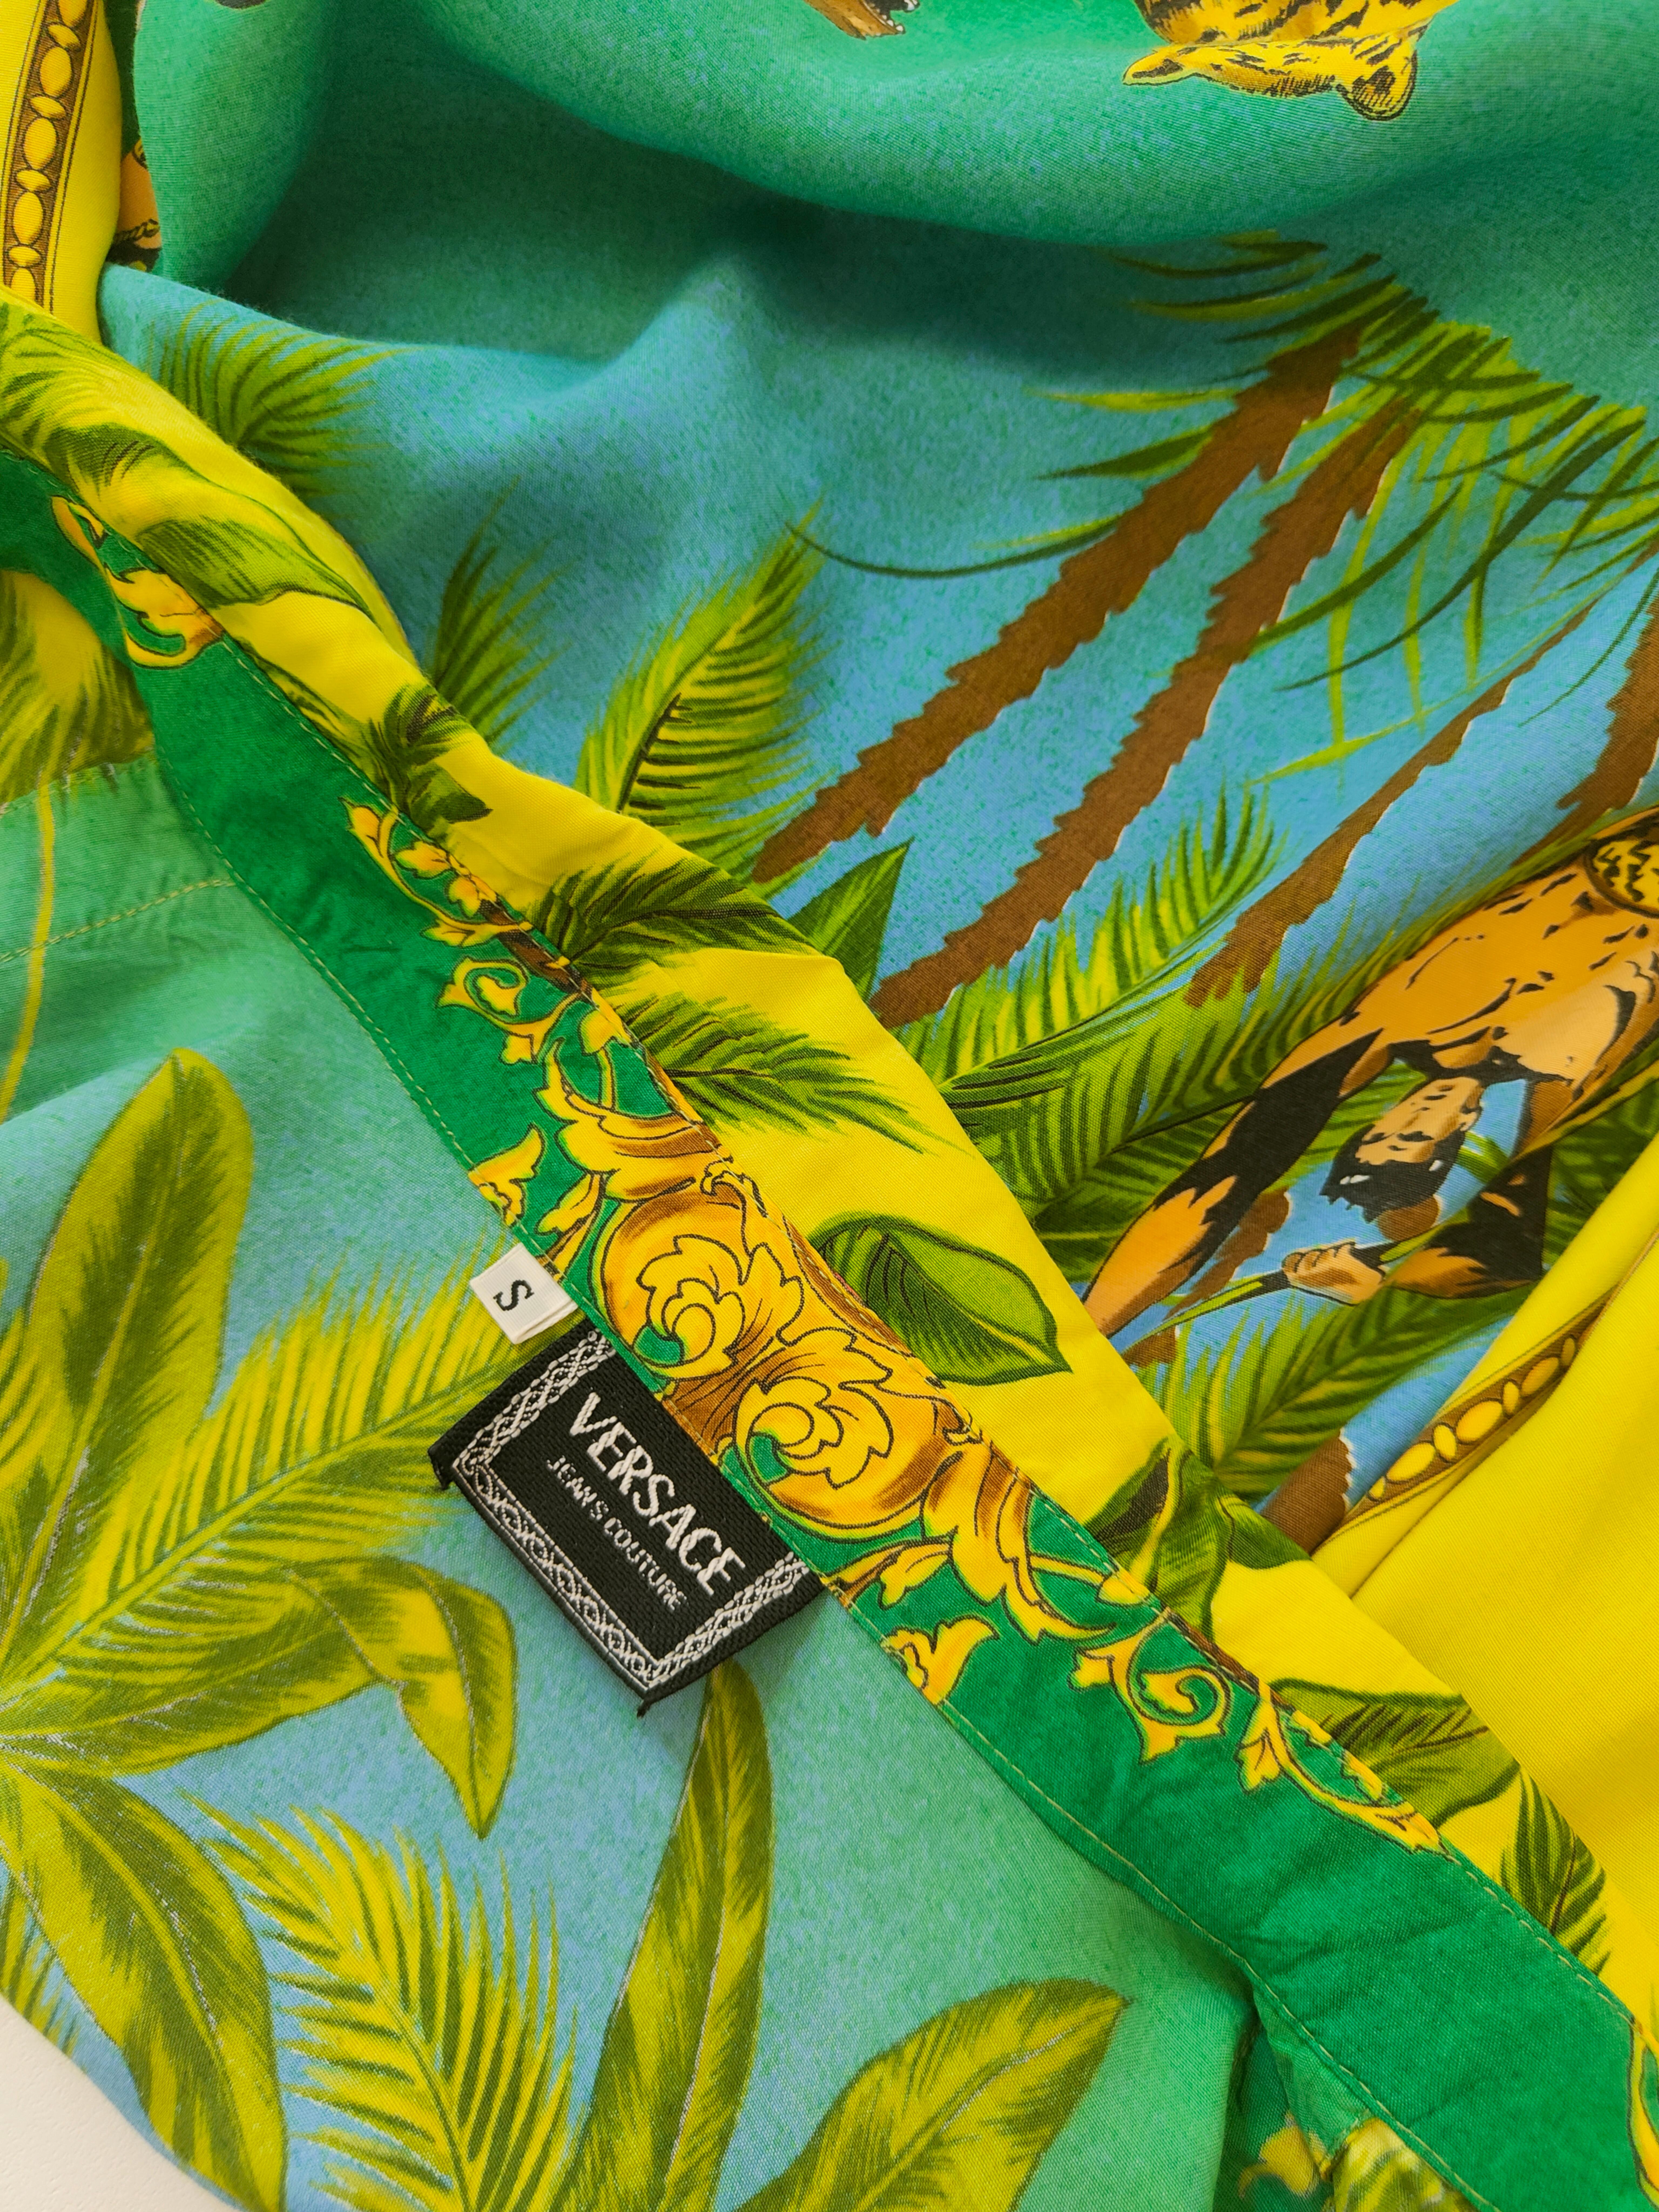 Chemise en coton iconique Tarzan de Versace
Chemise unique en coton multicolore
Totalement fabriqué en Italie en taille S